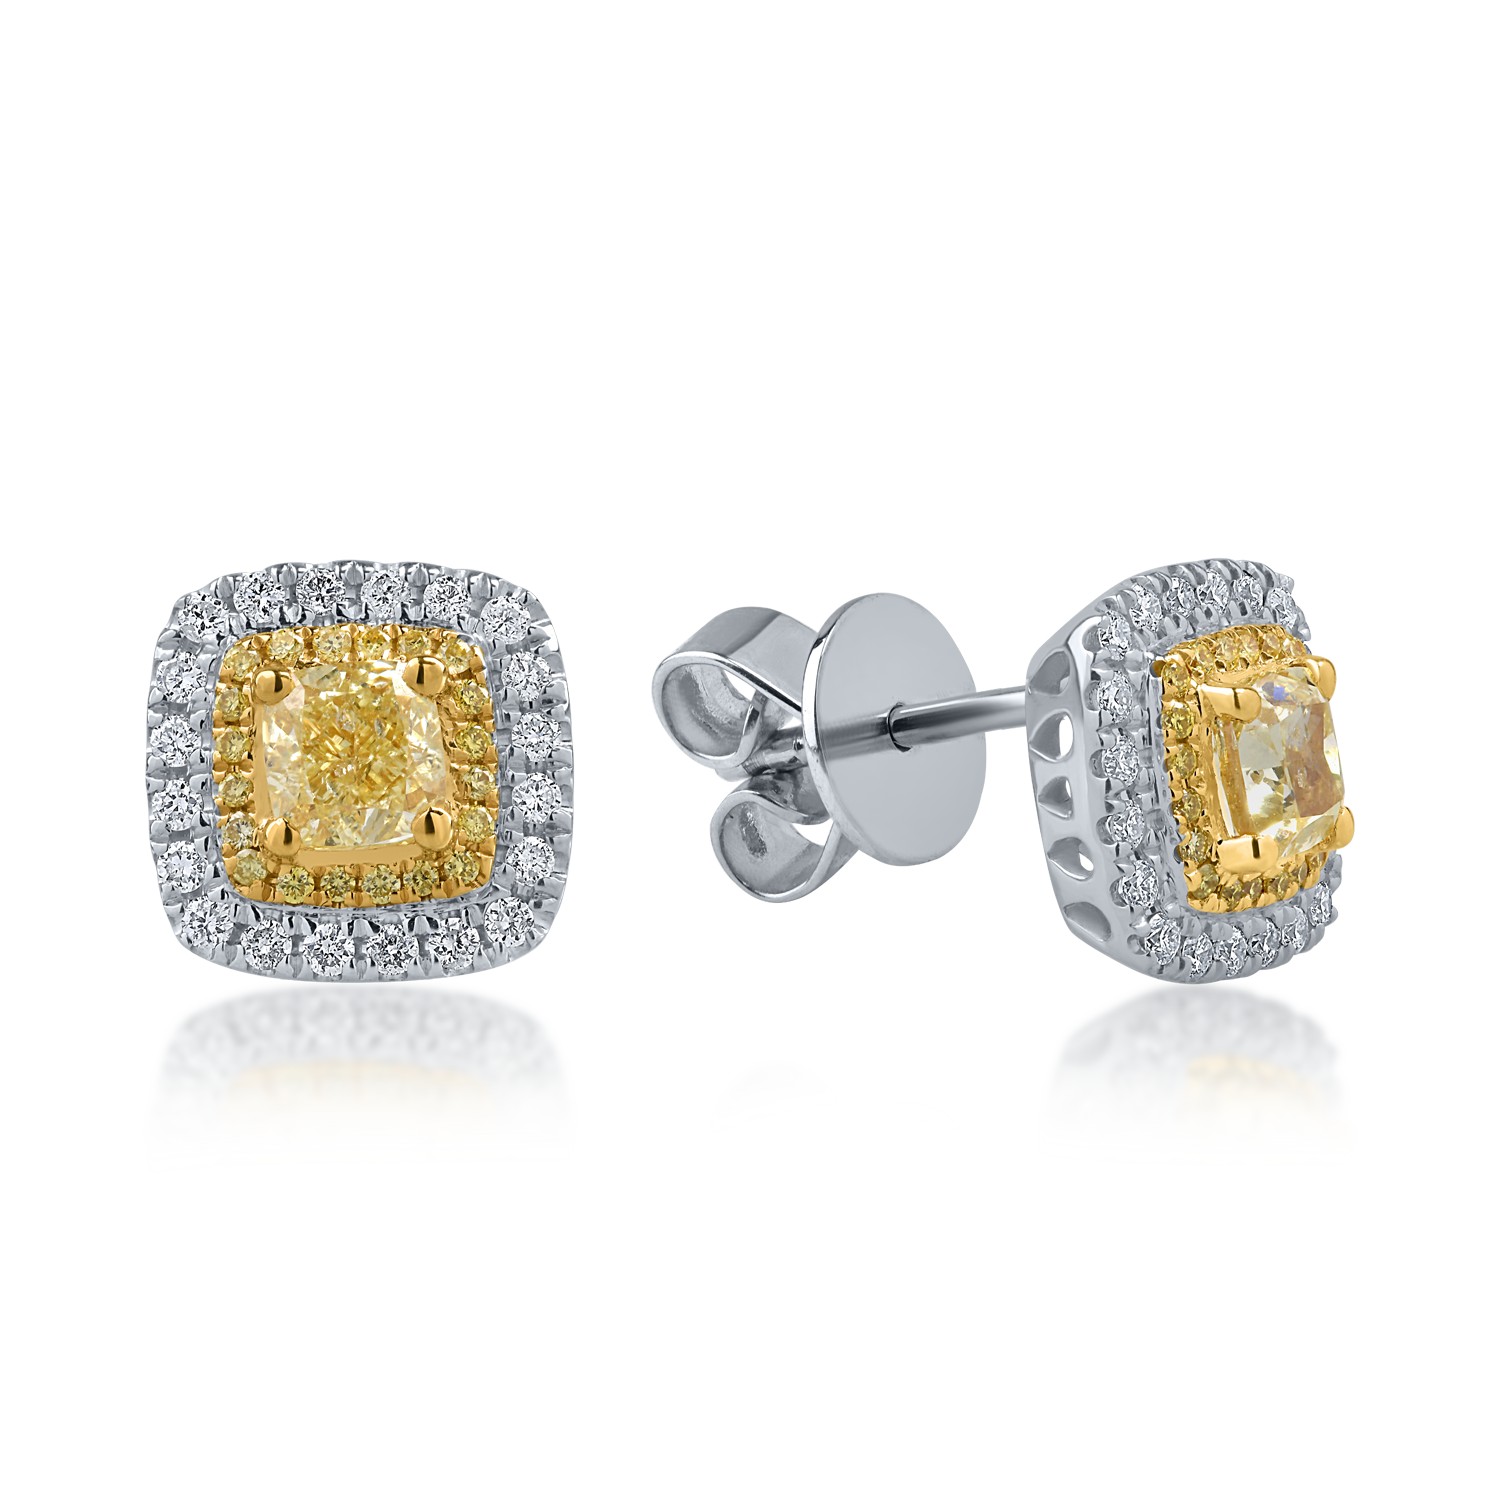 Cercei din aur alb-galben cu diamante galbene de 1.1ct si diamante transparente de 0.26ct